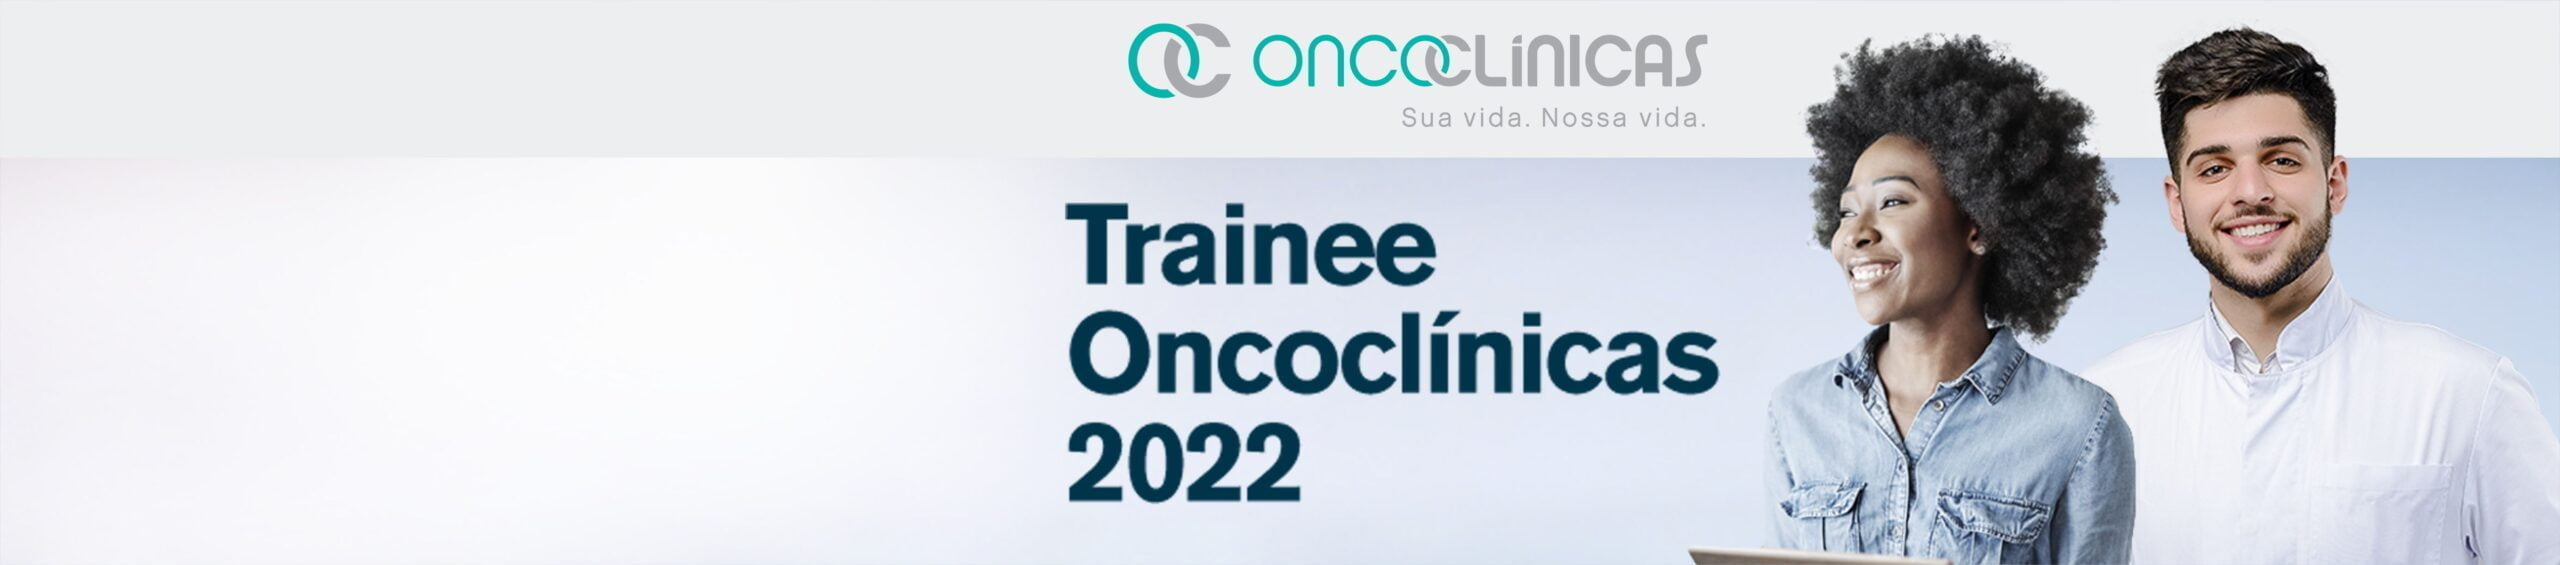 Trainee Oncoclínicas.